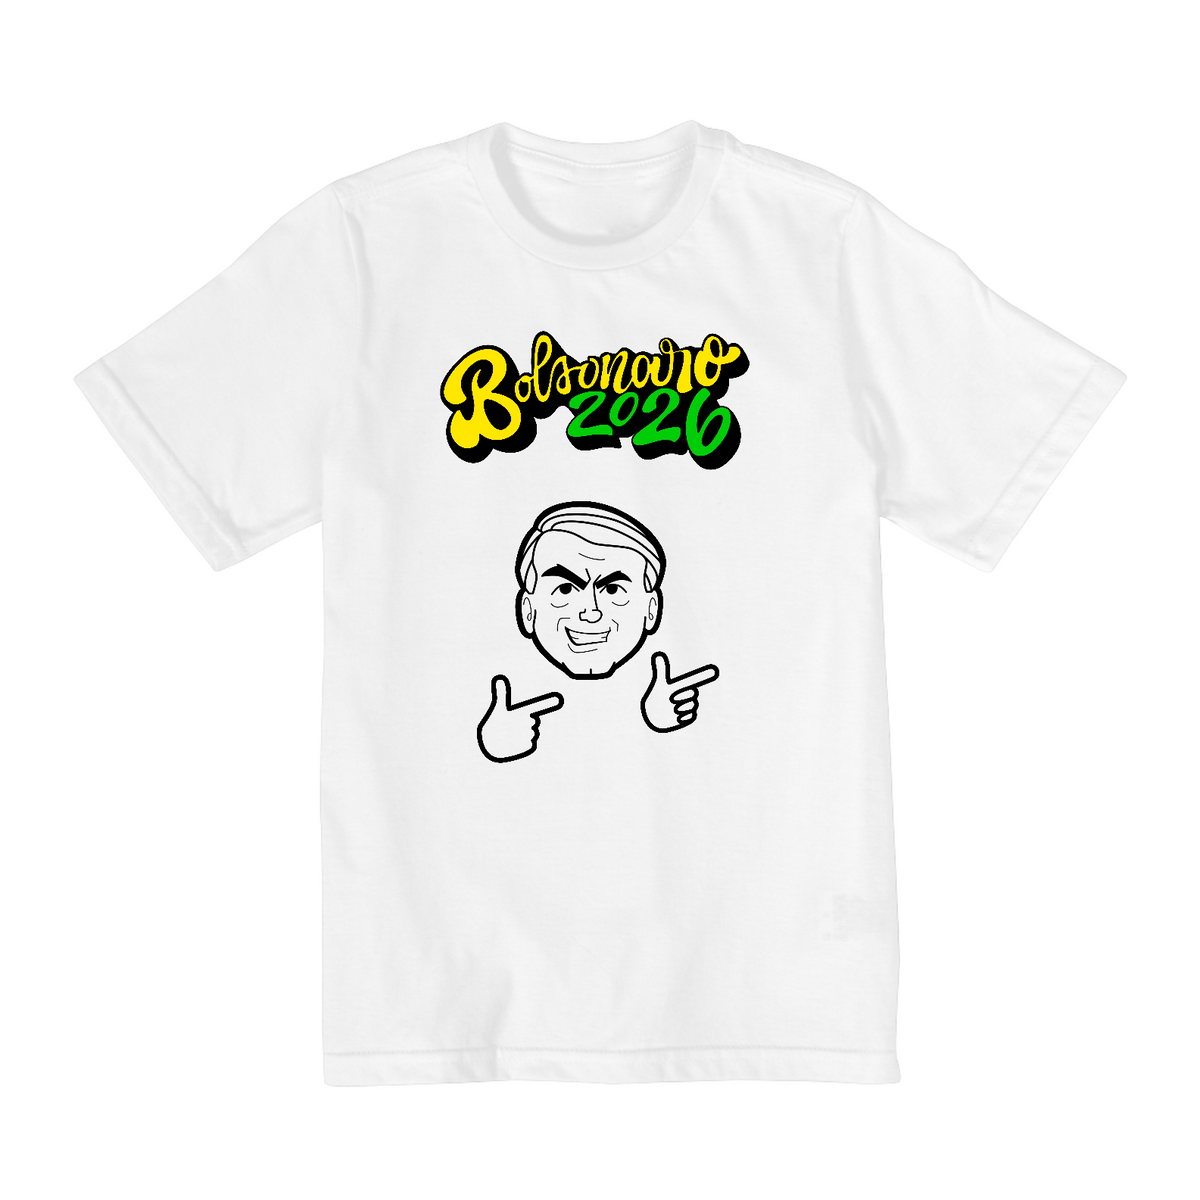 Nome do produto: Camiseta Infantil Bolsonaro 2026 (10 a 14 anos) - Branca, unissex